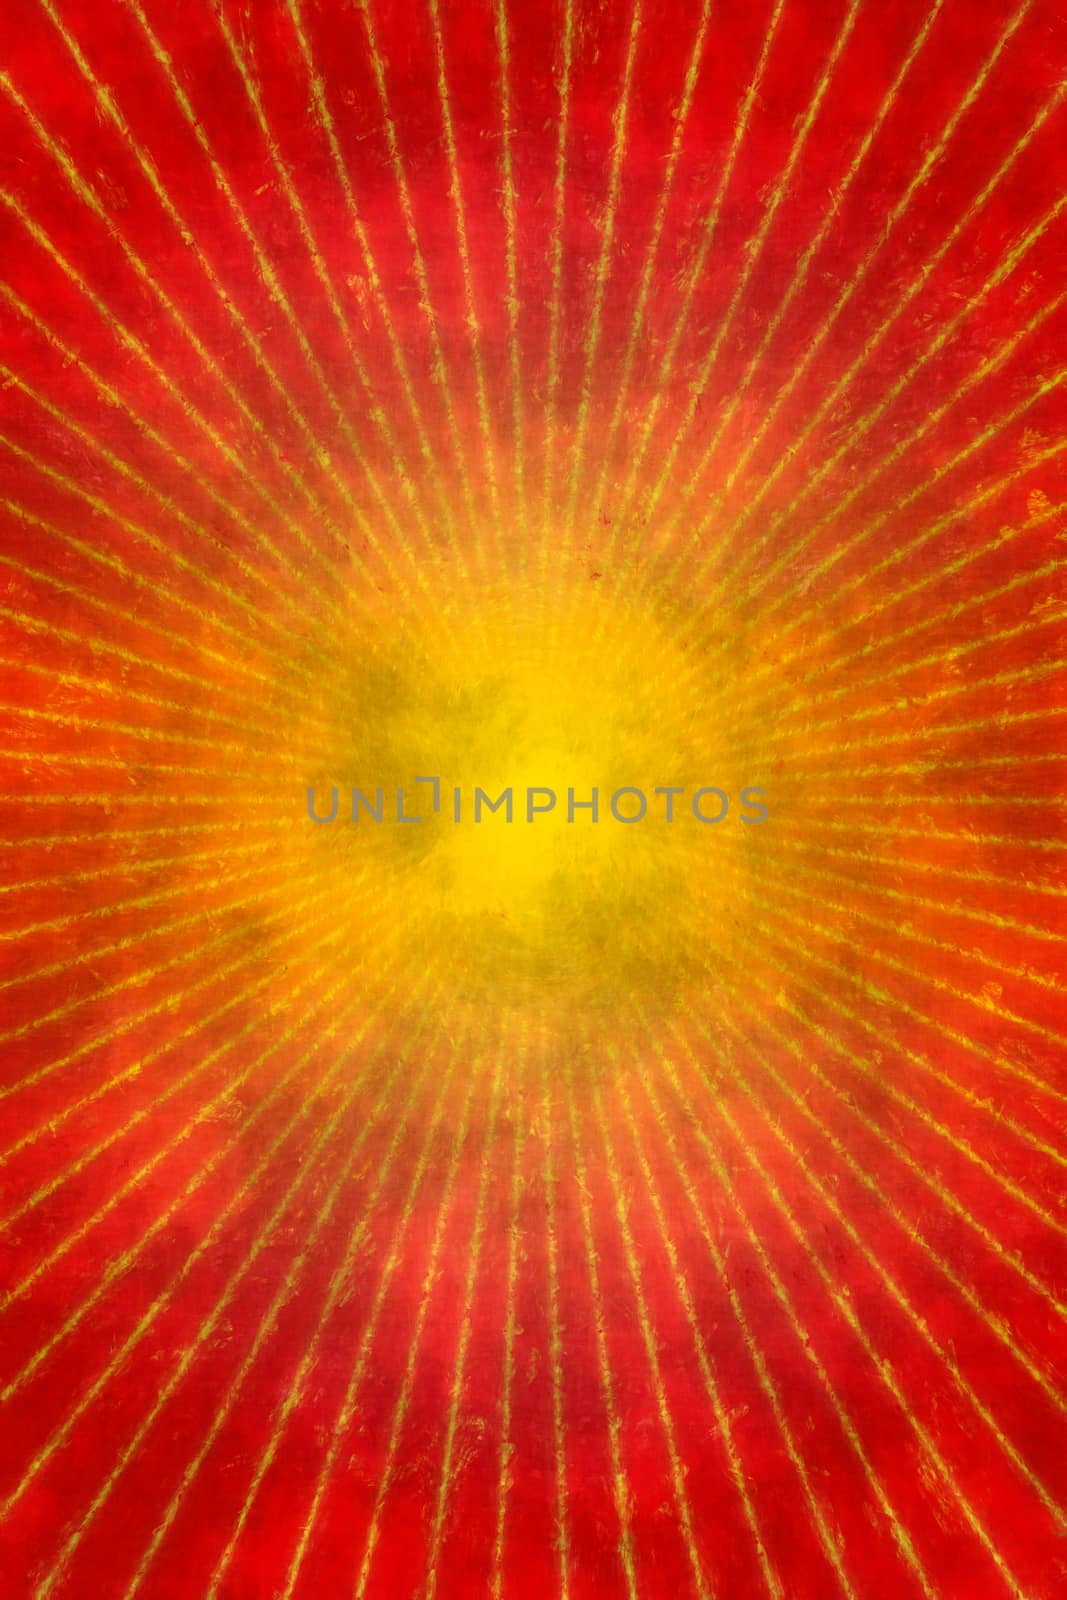 Red grunge sunburst background or texture